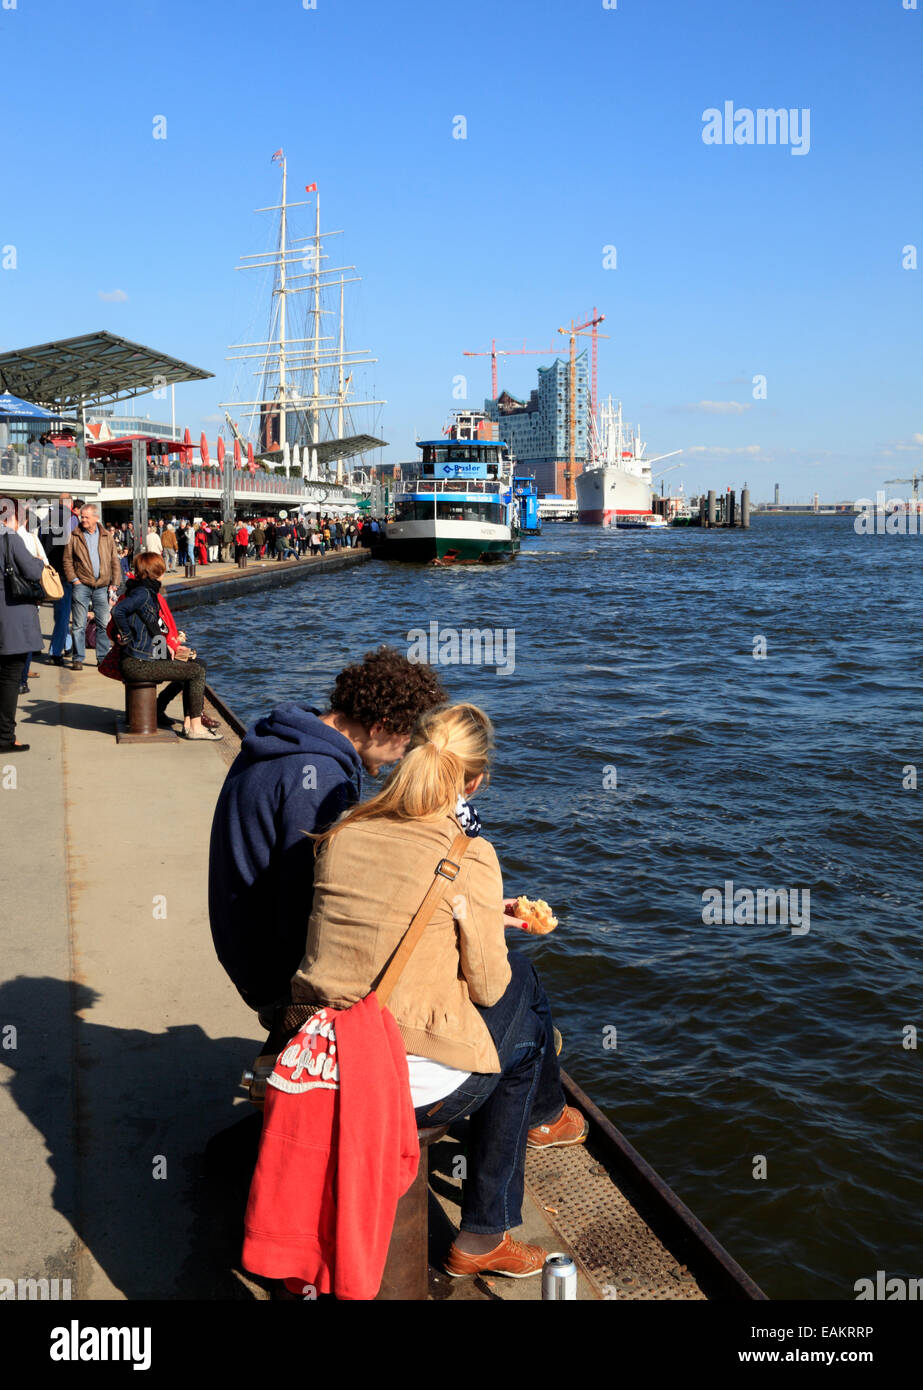 Landungsbruecken jetty pier, Hamburg harbor, Germany, Europe Stock Photo